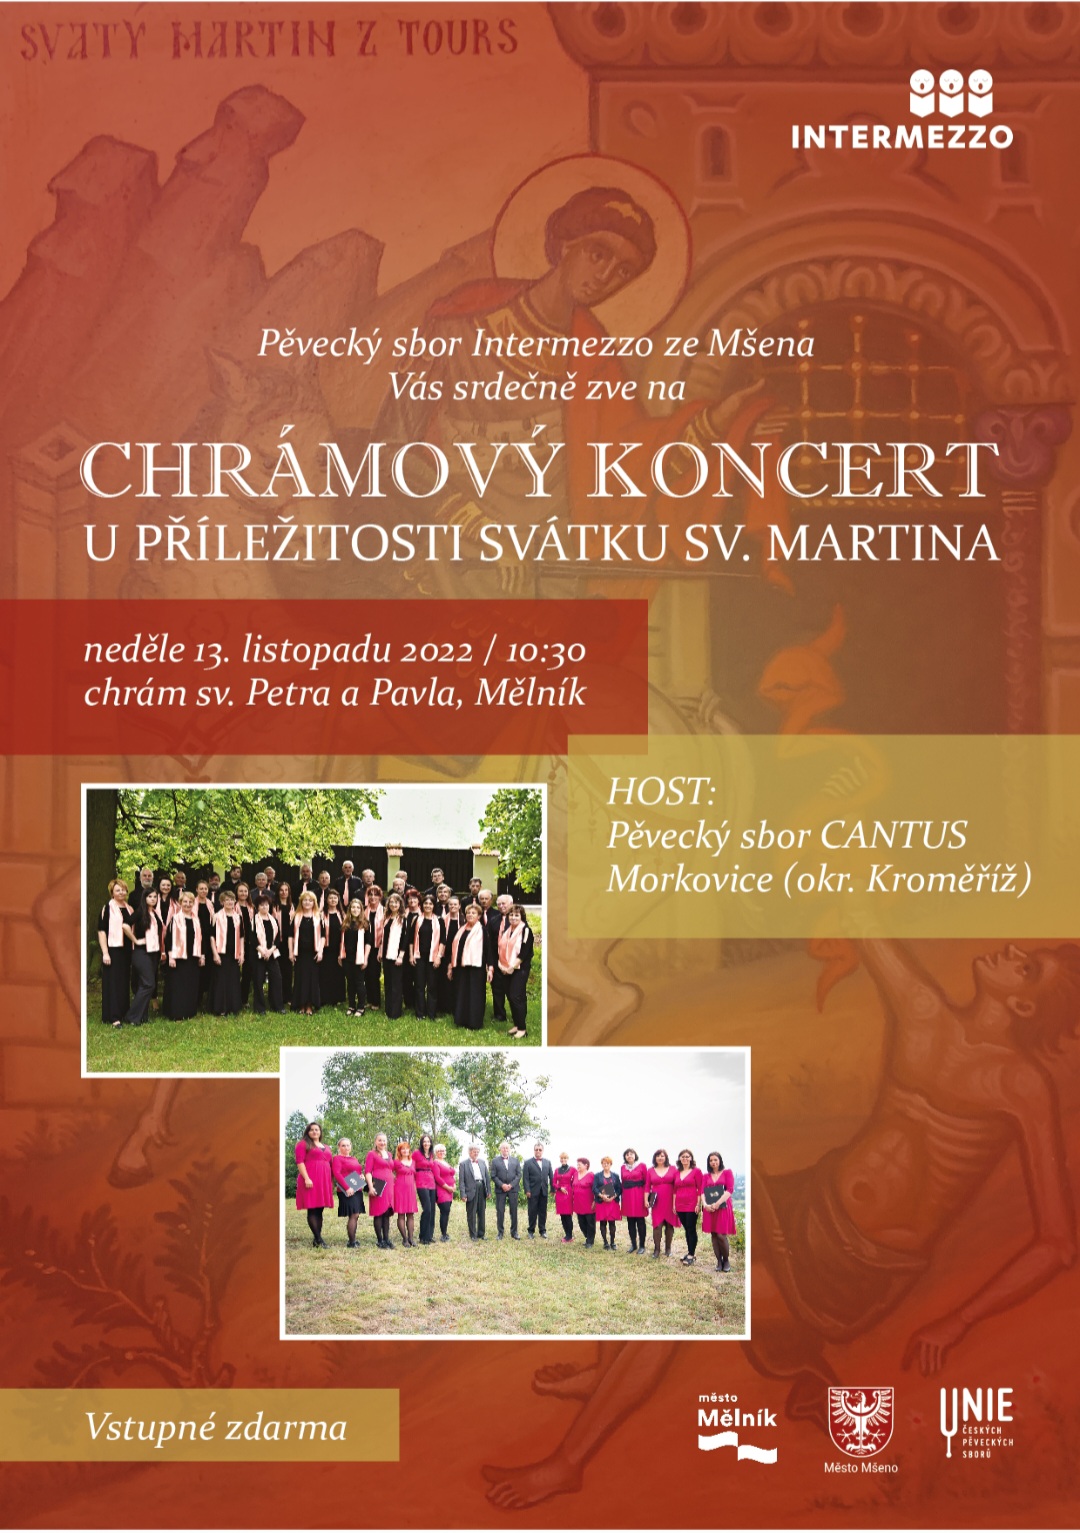 Chrámovy koncert u příležitosti svátku sv. Martina